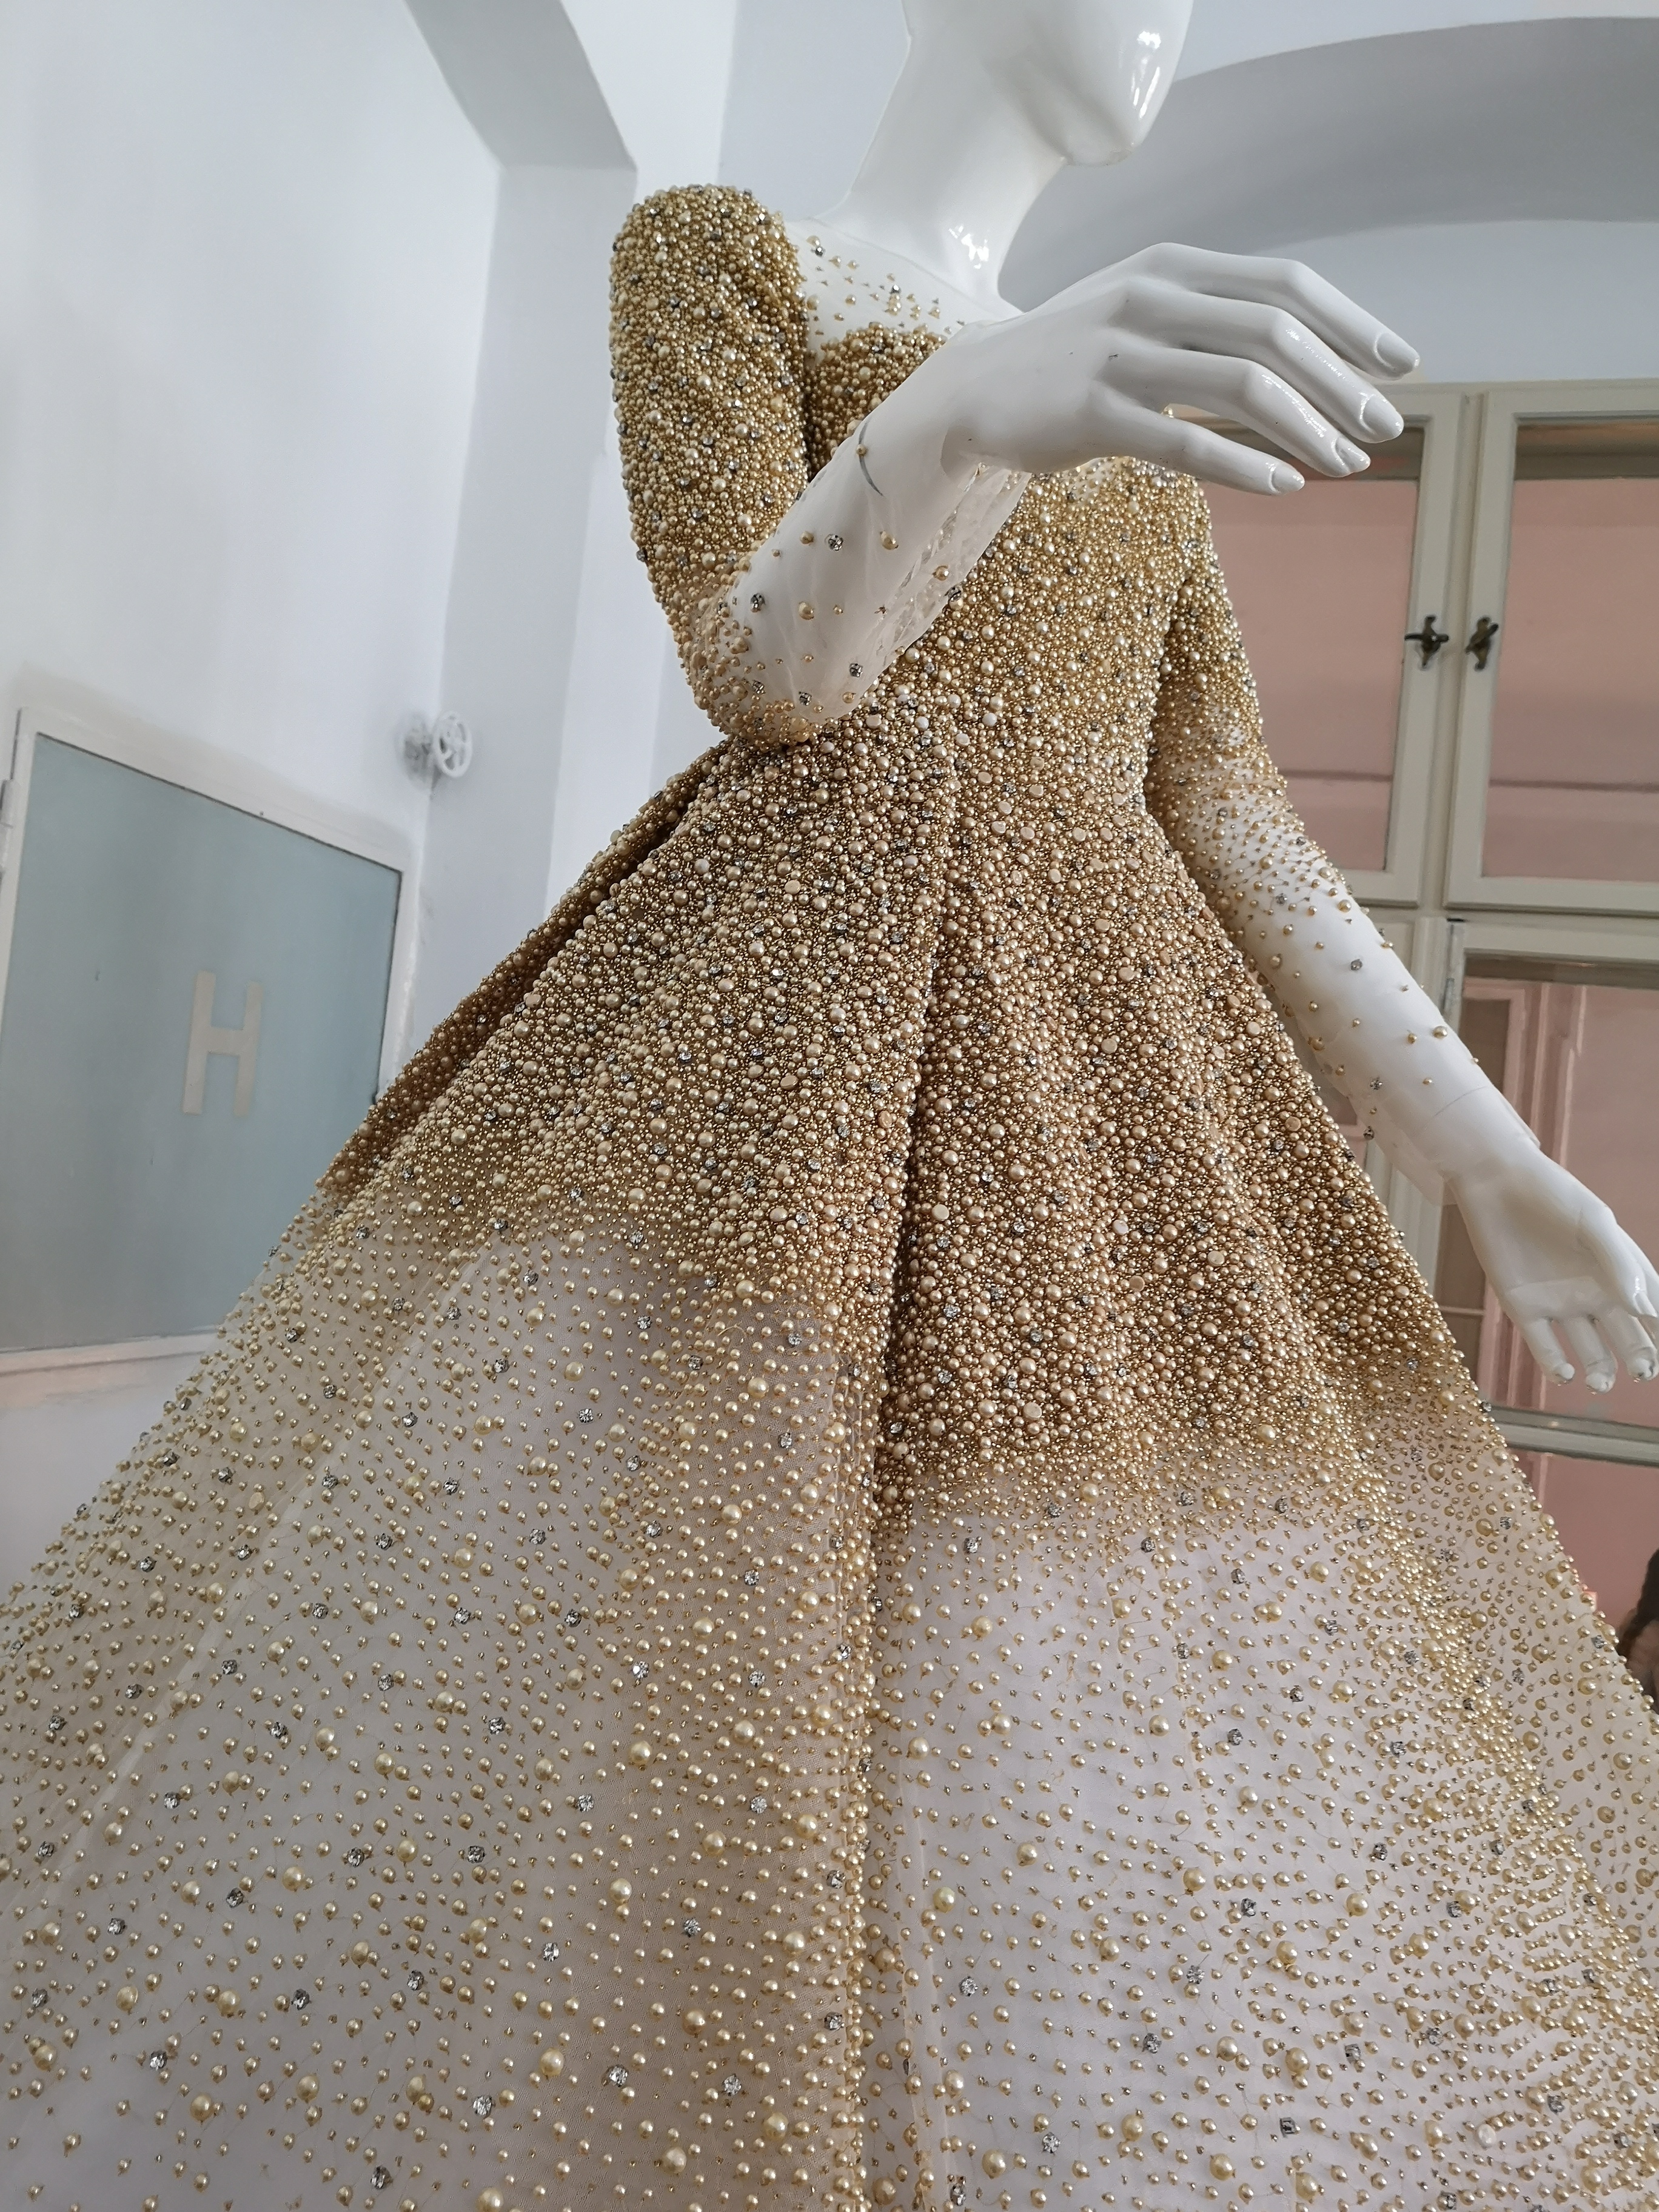 flame Repair possible Inspect Apariţie SPECTACULOASĂ pentru orice mireasă: O rochie unicat, care  cântăreşte 10 kilograme, a fost brodată manual cu mii de perle | FOTO